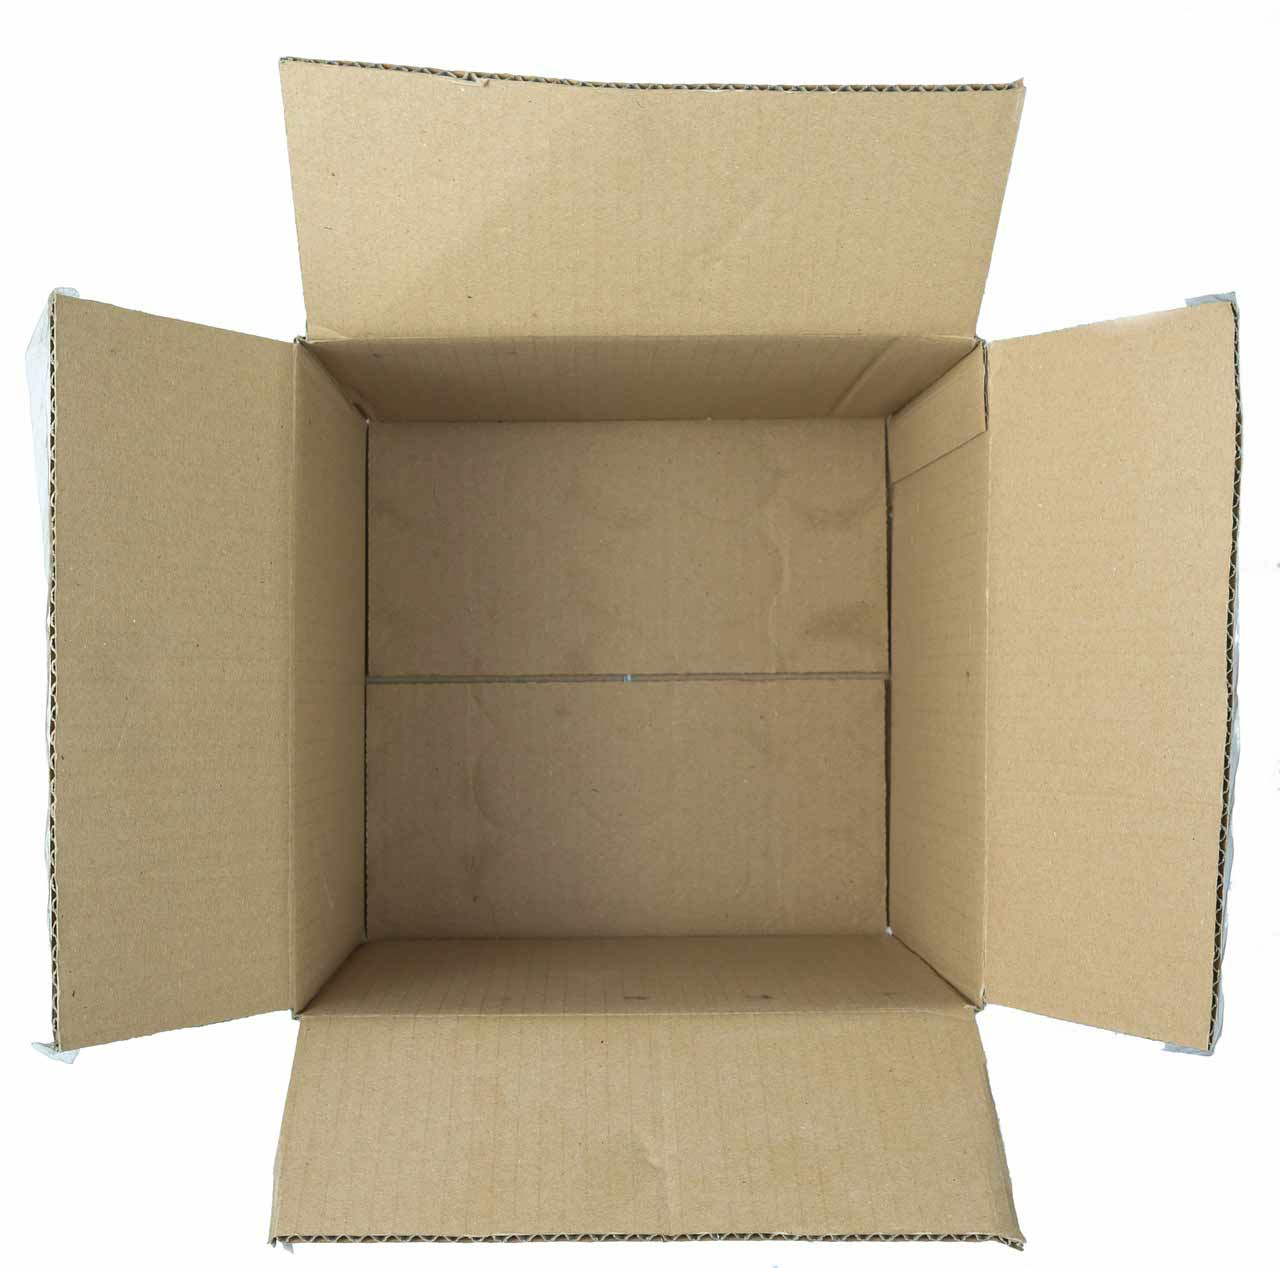 Для чего используются картонные коробки?